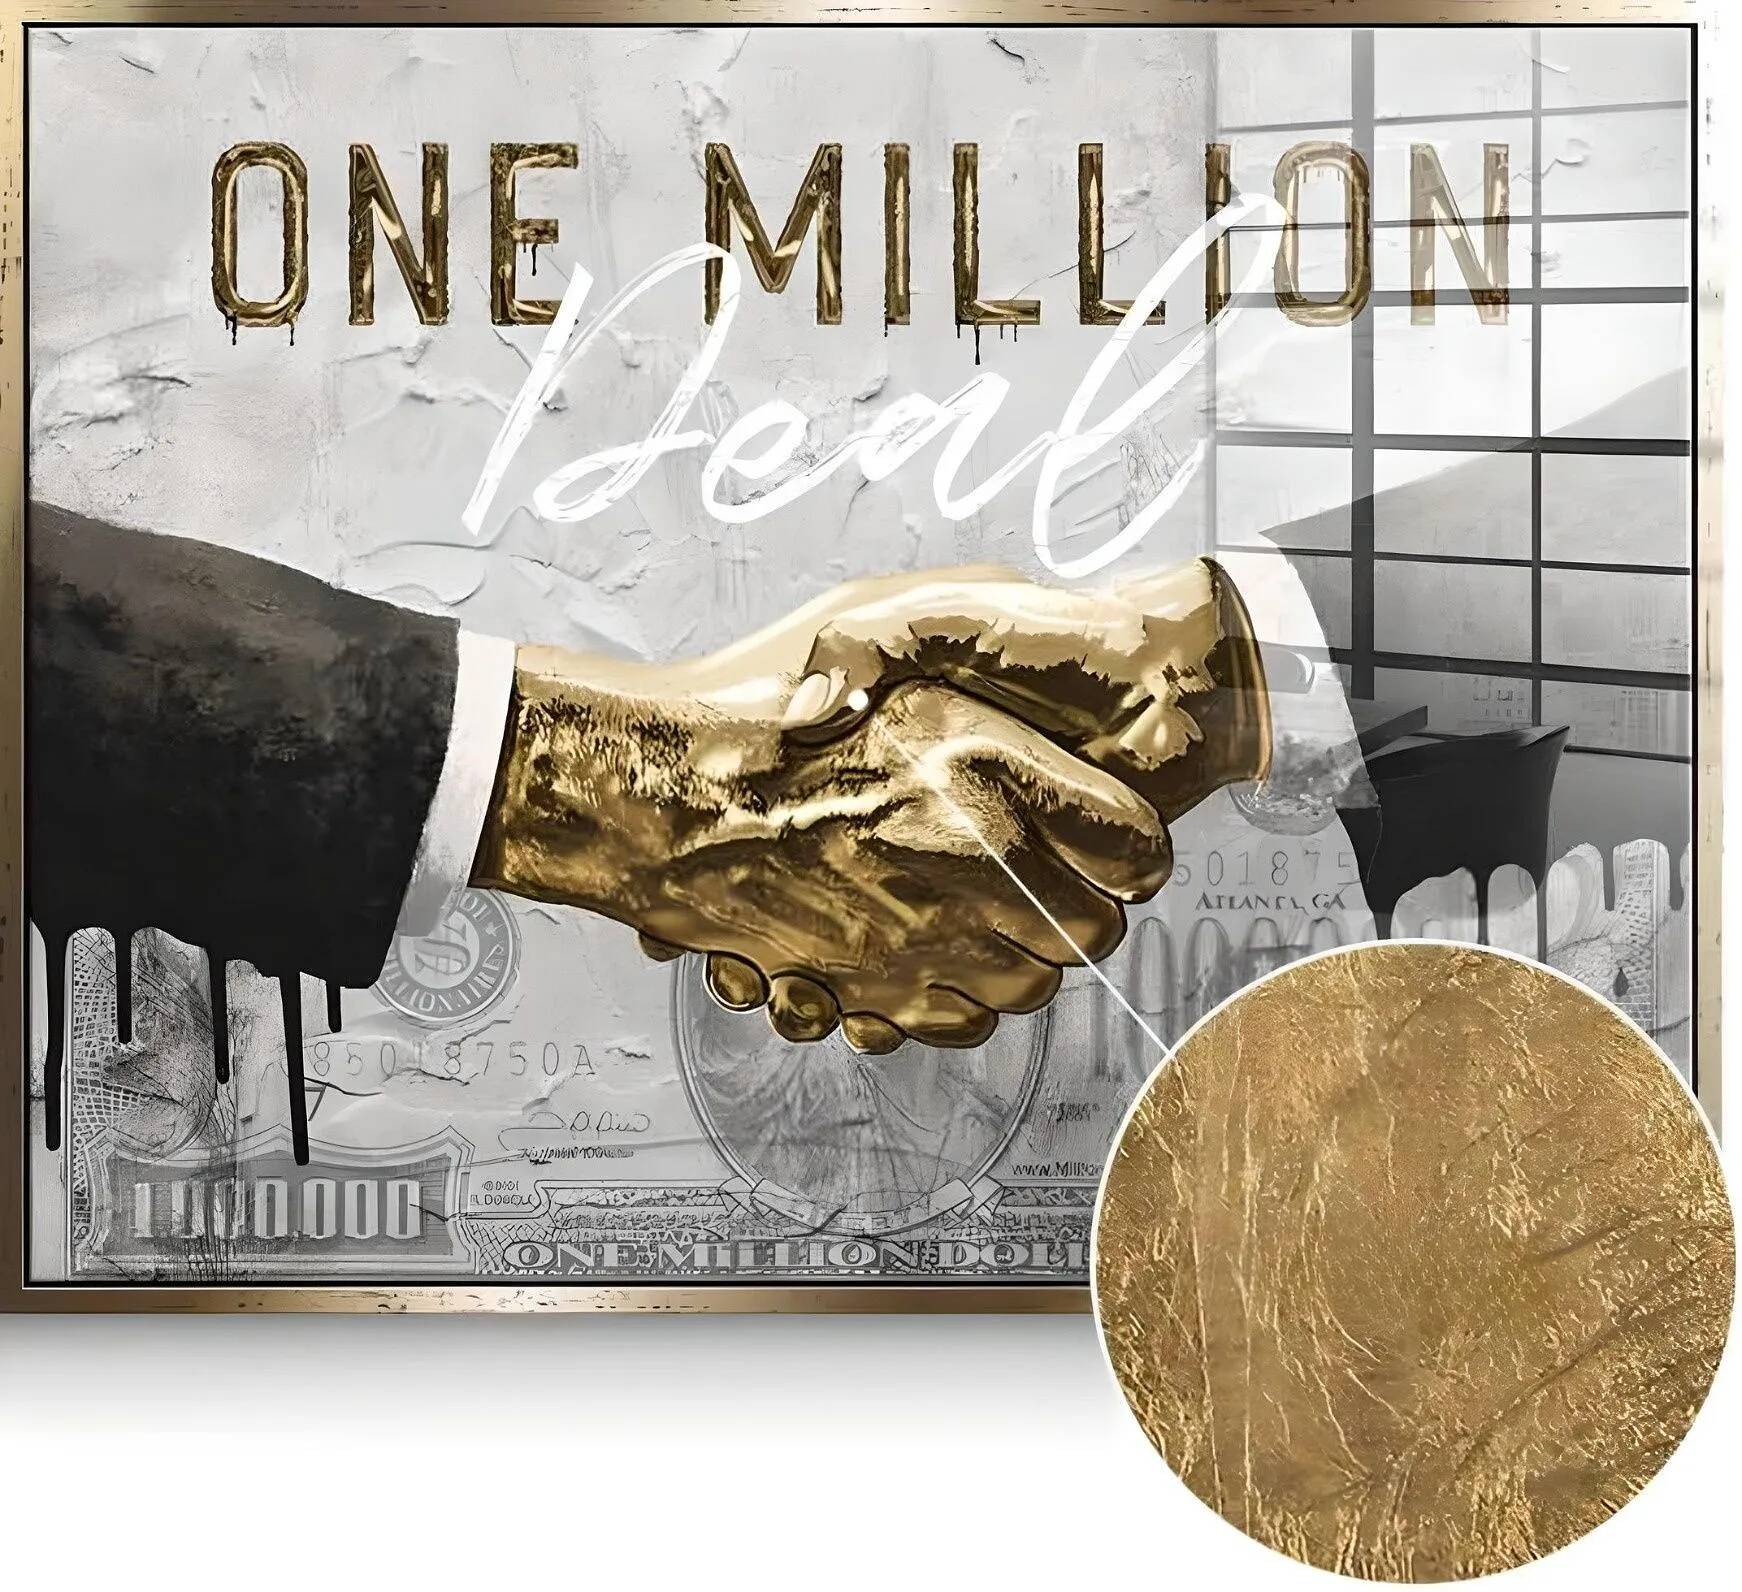 Tableau feuille d'or One Million Deal doré